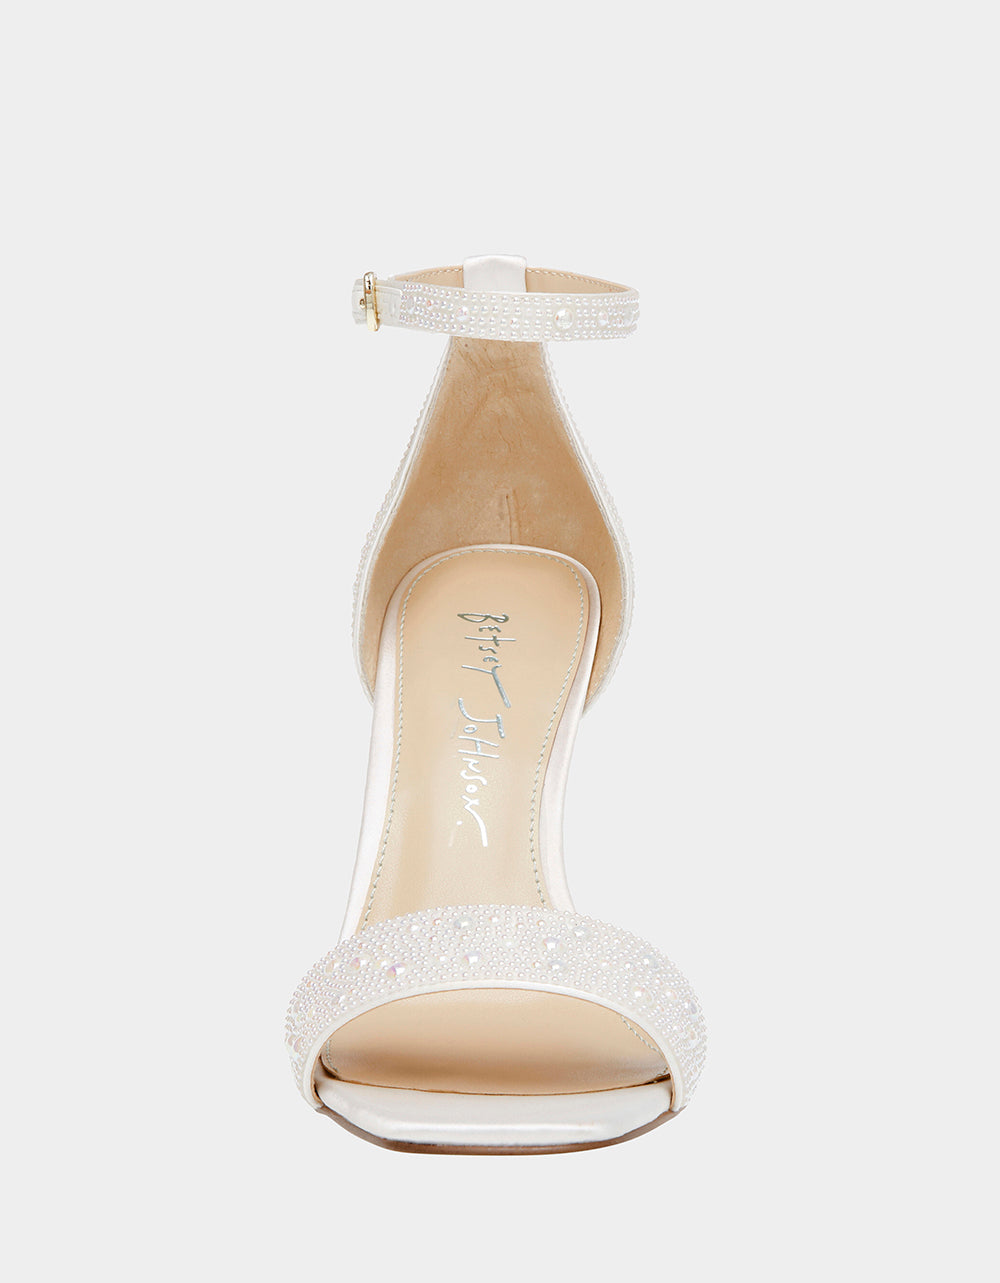 DANI IVORY Heels | Pearl Bridal Heels | Ankle Strap Bridal Heels ...